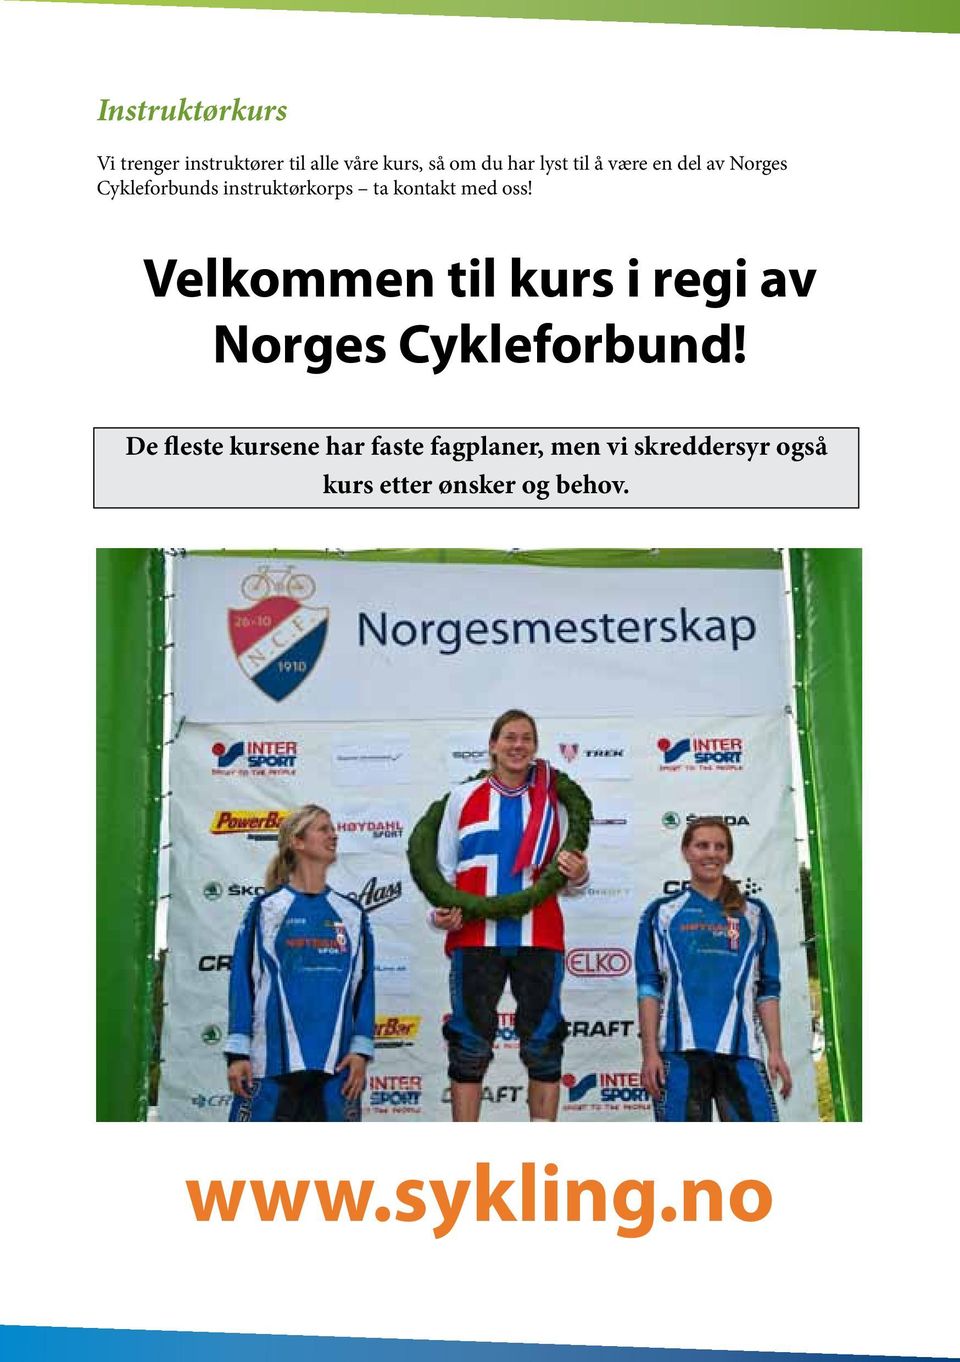 Velkommen til kurs i regi av Norges Cykleforbund!